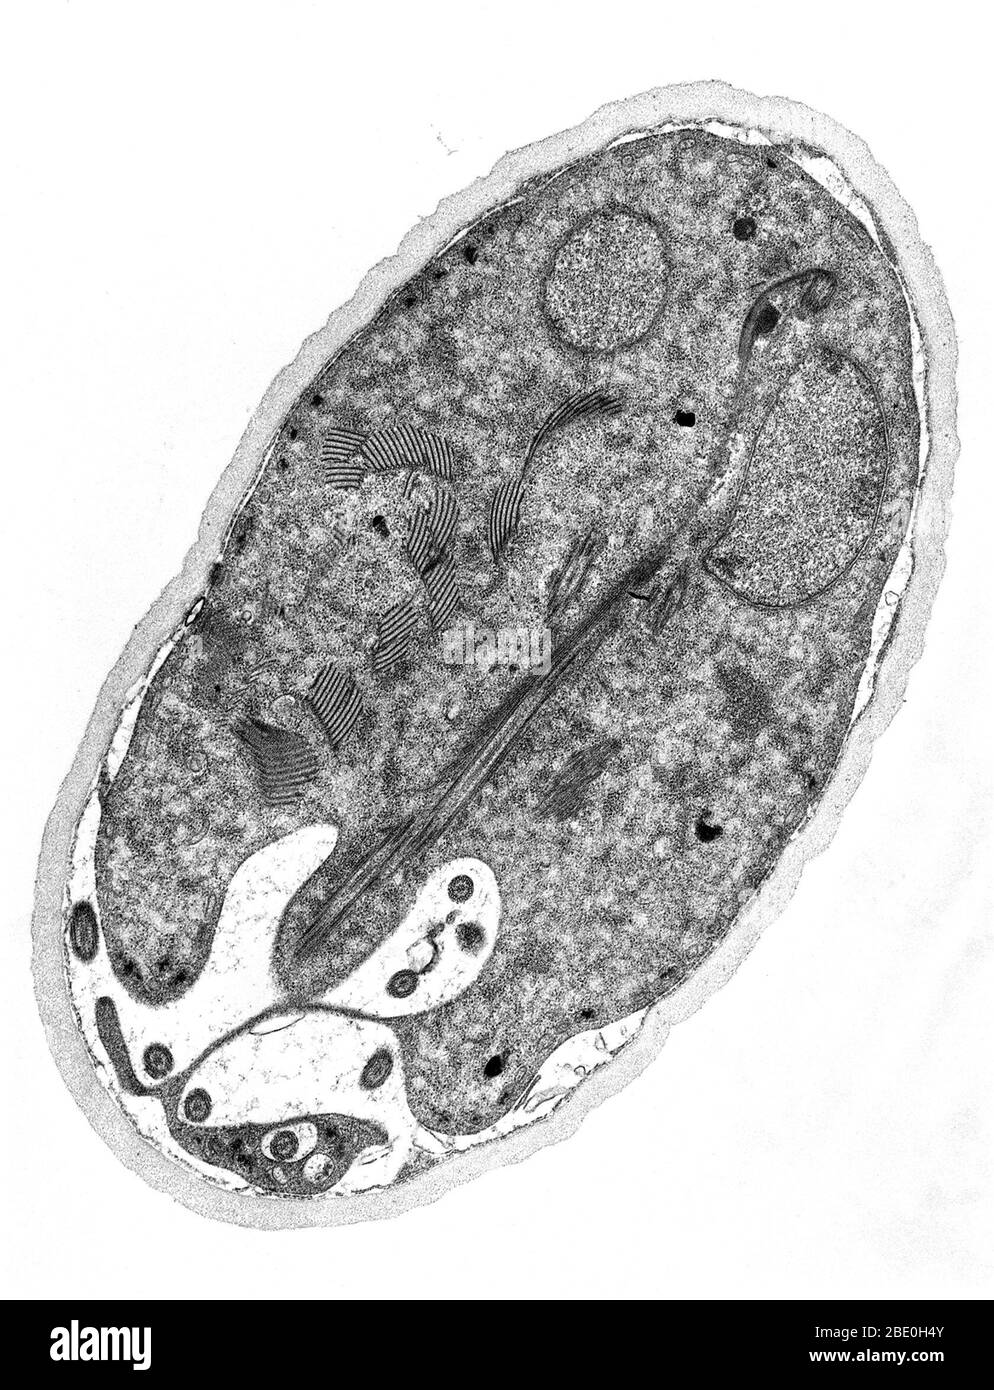 Transmission Electron Micrograph (TEM) zeigt das Zyststadium eines Giardia sp. Protozoons. Die äußere Zystenwand besteht aus filamentösen und membranösen Teilen und ist vom Zytoplasma der Trophozoiten, die im Inneren durch den peritrophen Raum enthalten sind, getrennt. Diese Zystenwand ist etwa 0.25 Mikrometer dick. Stockfoto